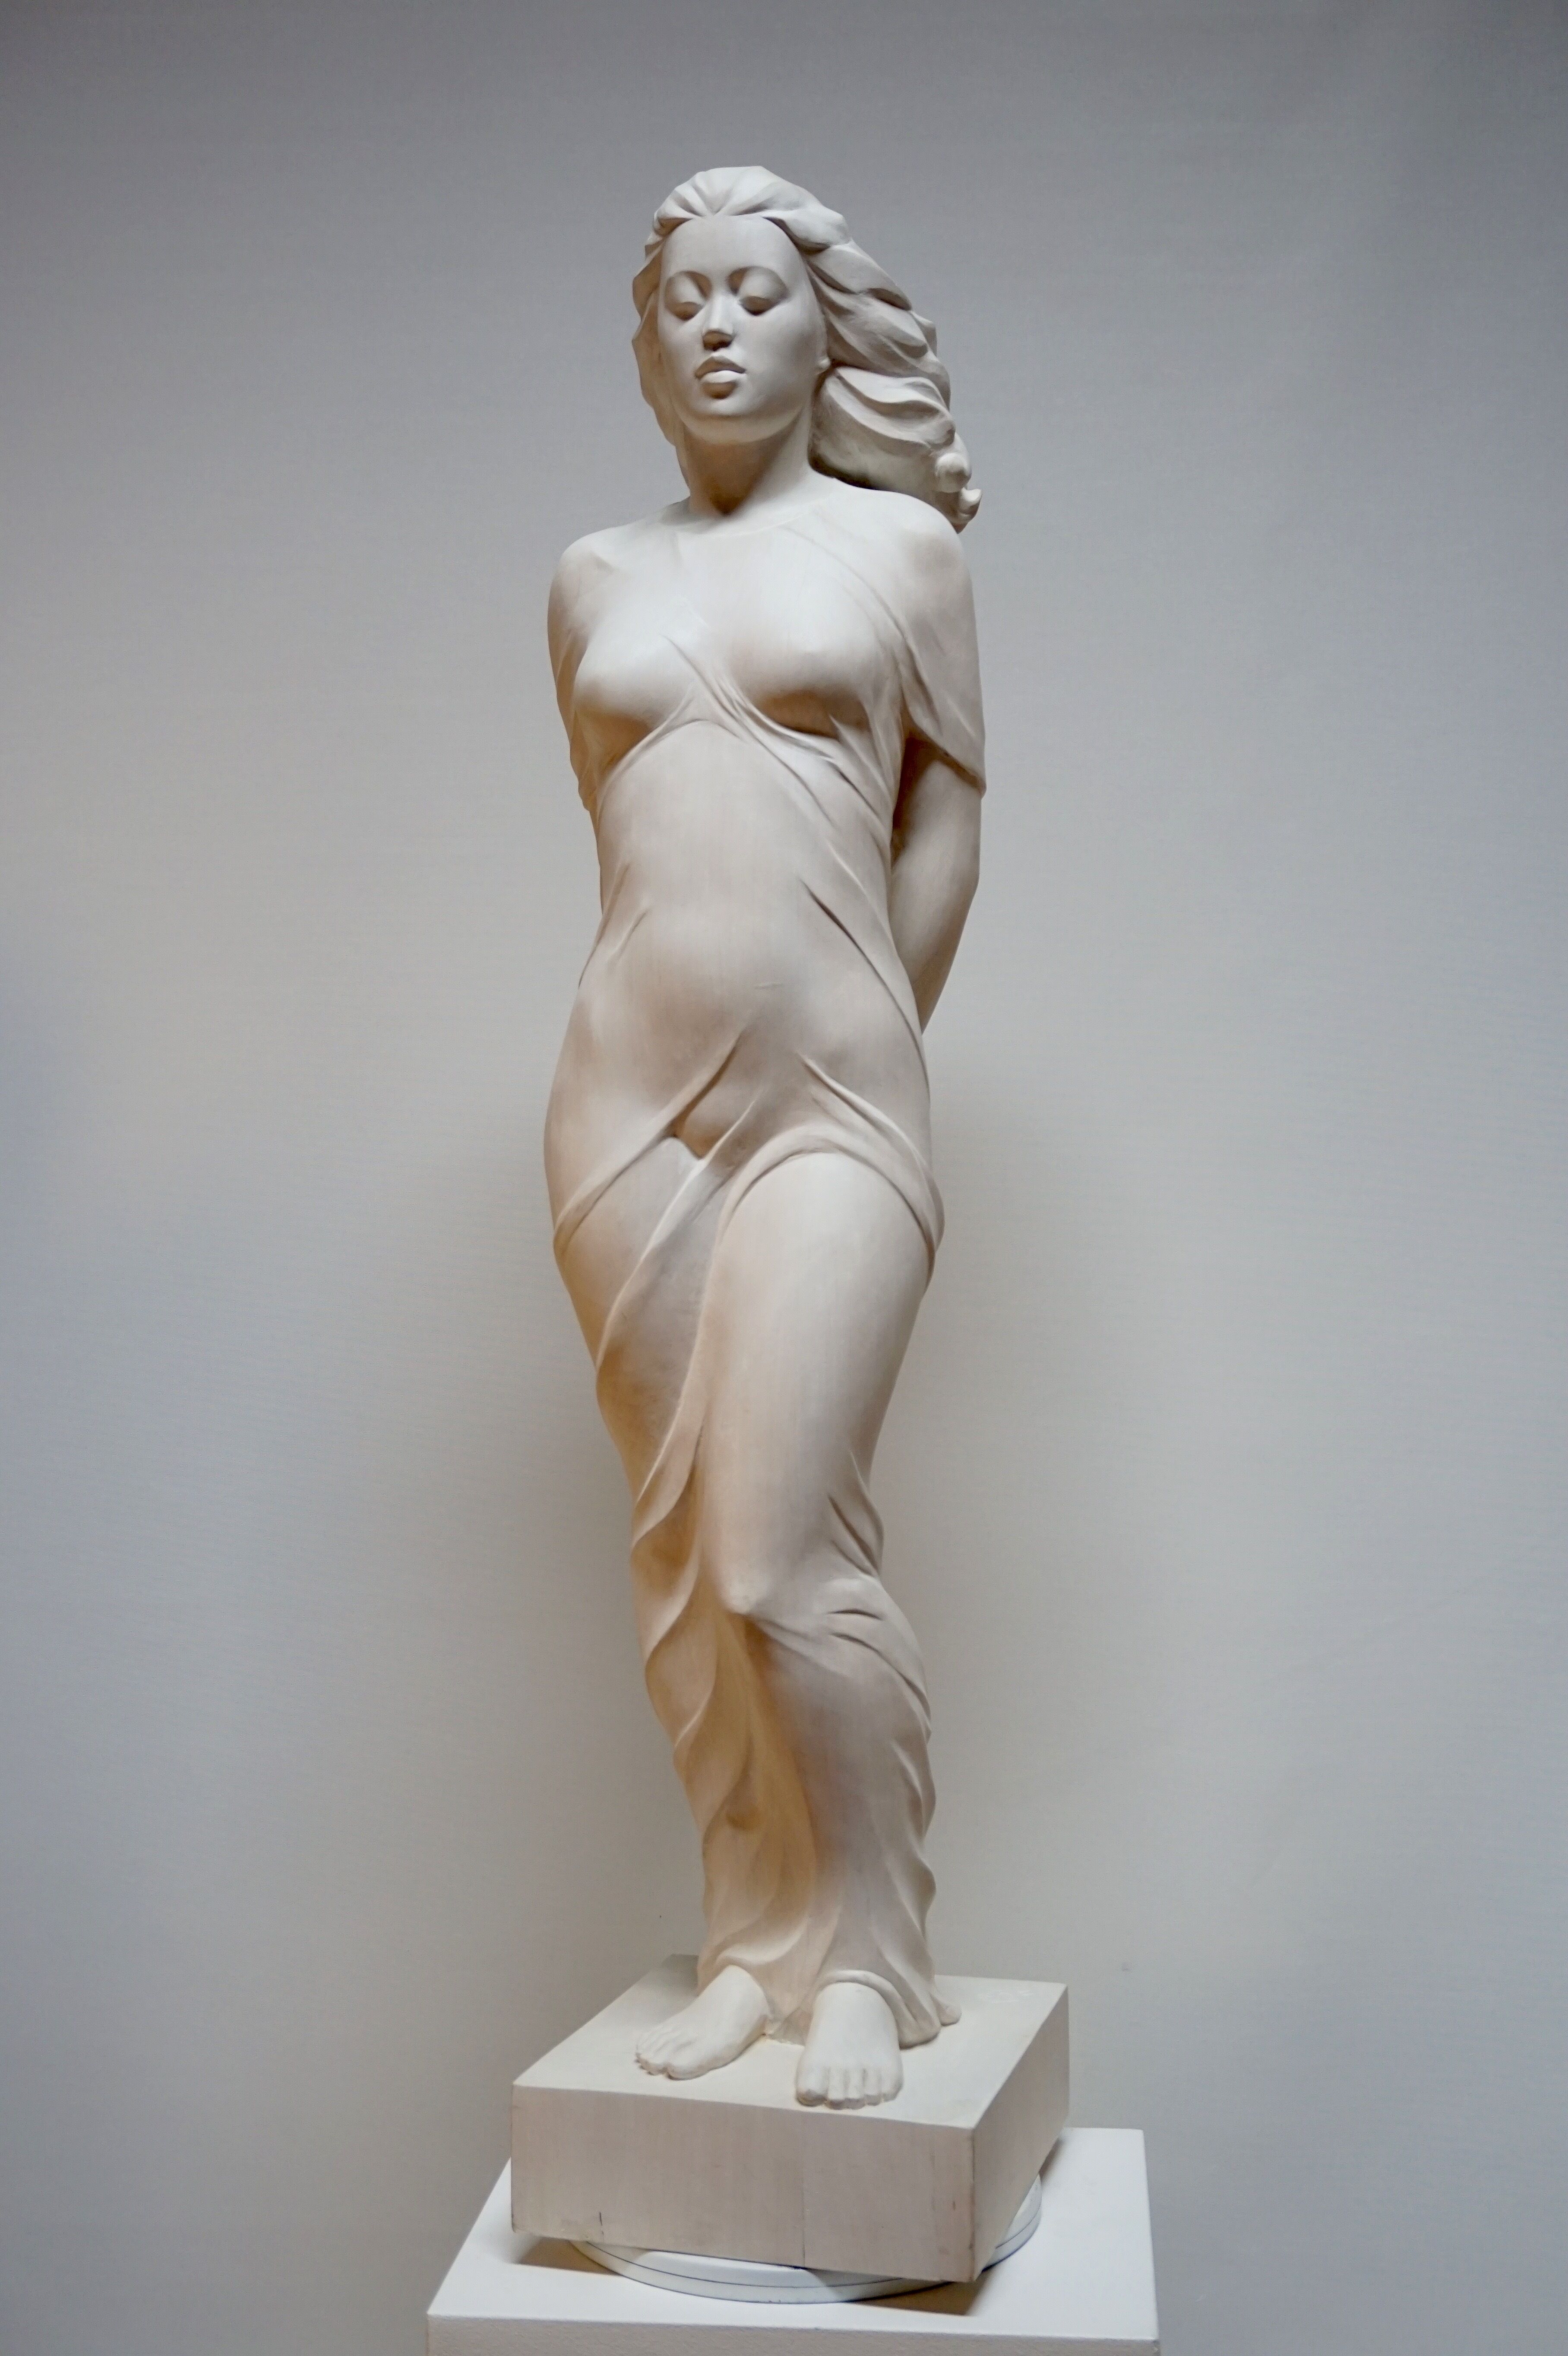 Skulptur "Einsame" (2011)